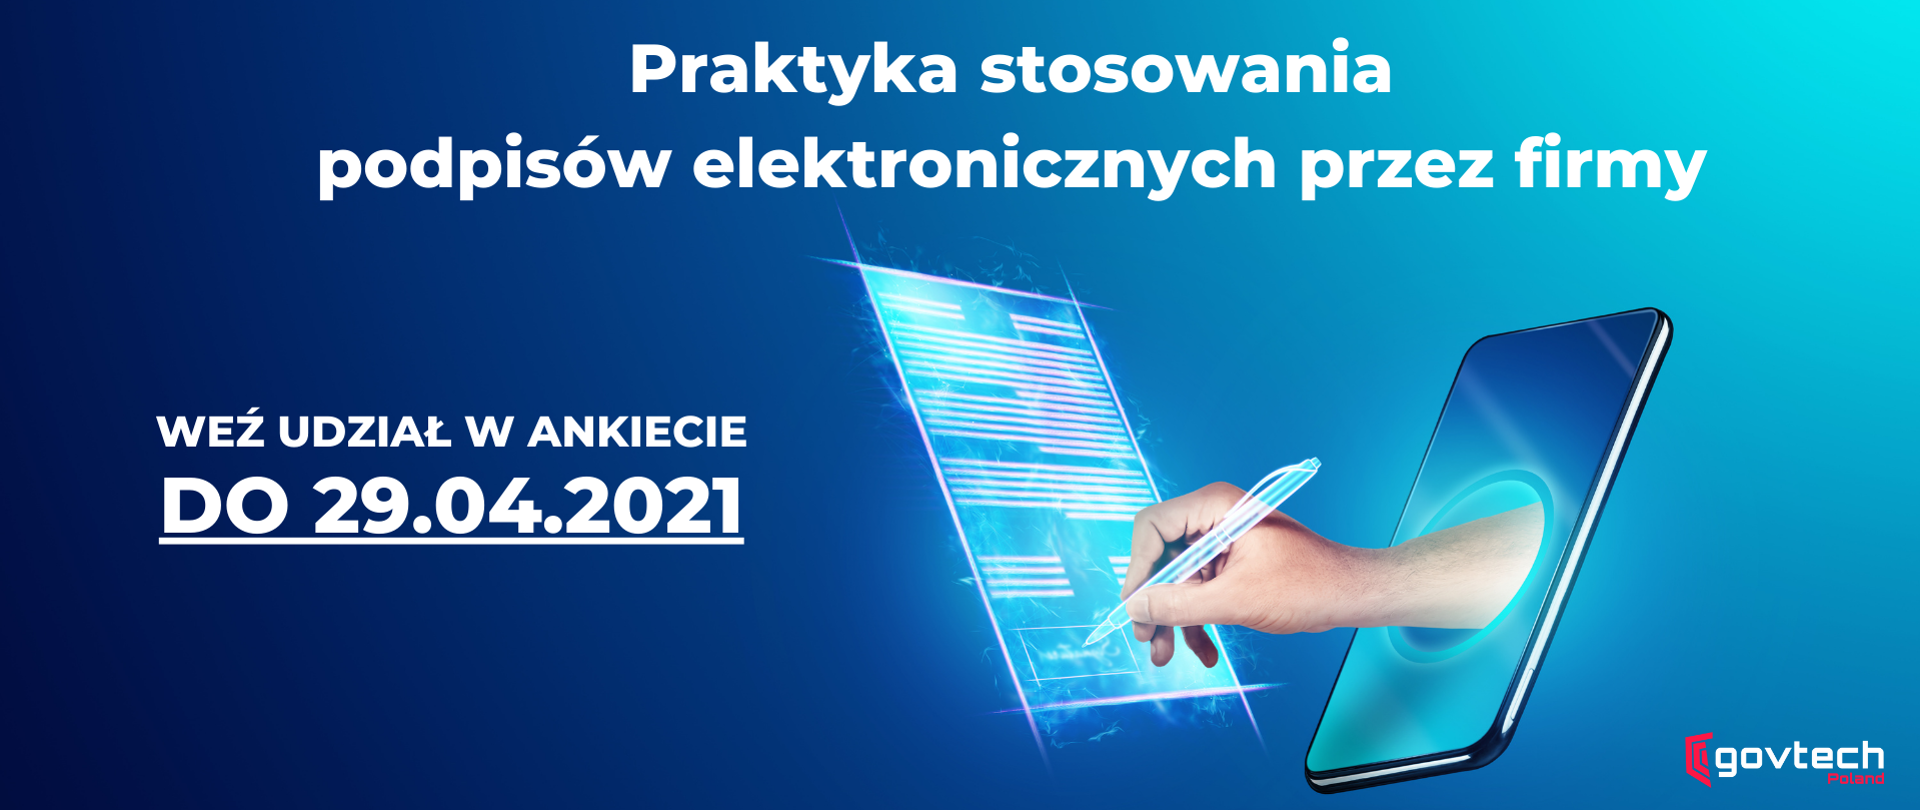 Zaproszenie do ankiety o podpisach elektronicznych do 29.04.2021 r. 